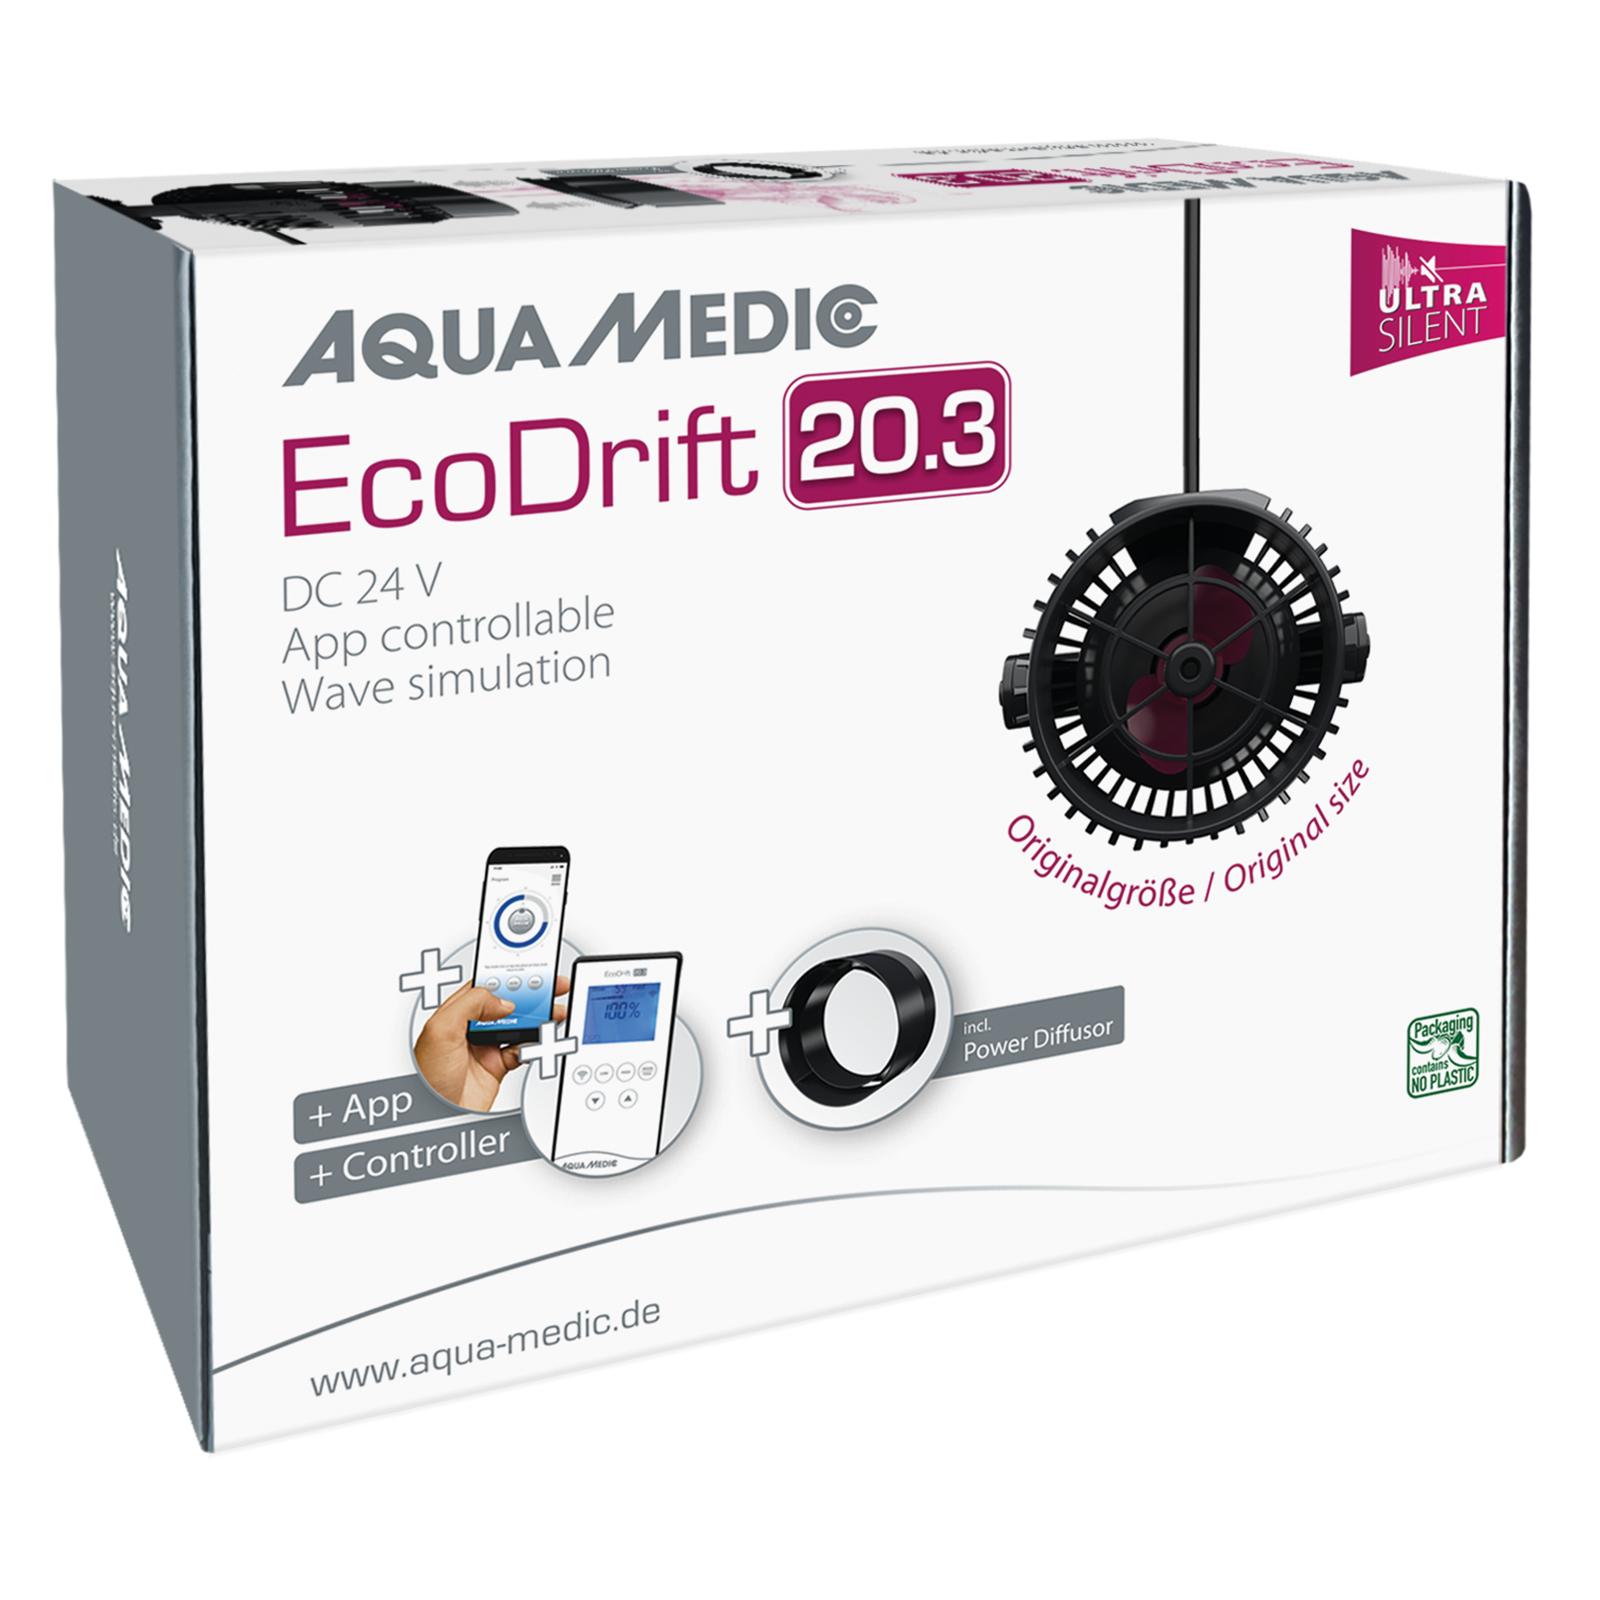 Aqua Medic EcoDrift 20.3 WiFi stromingspomp 